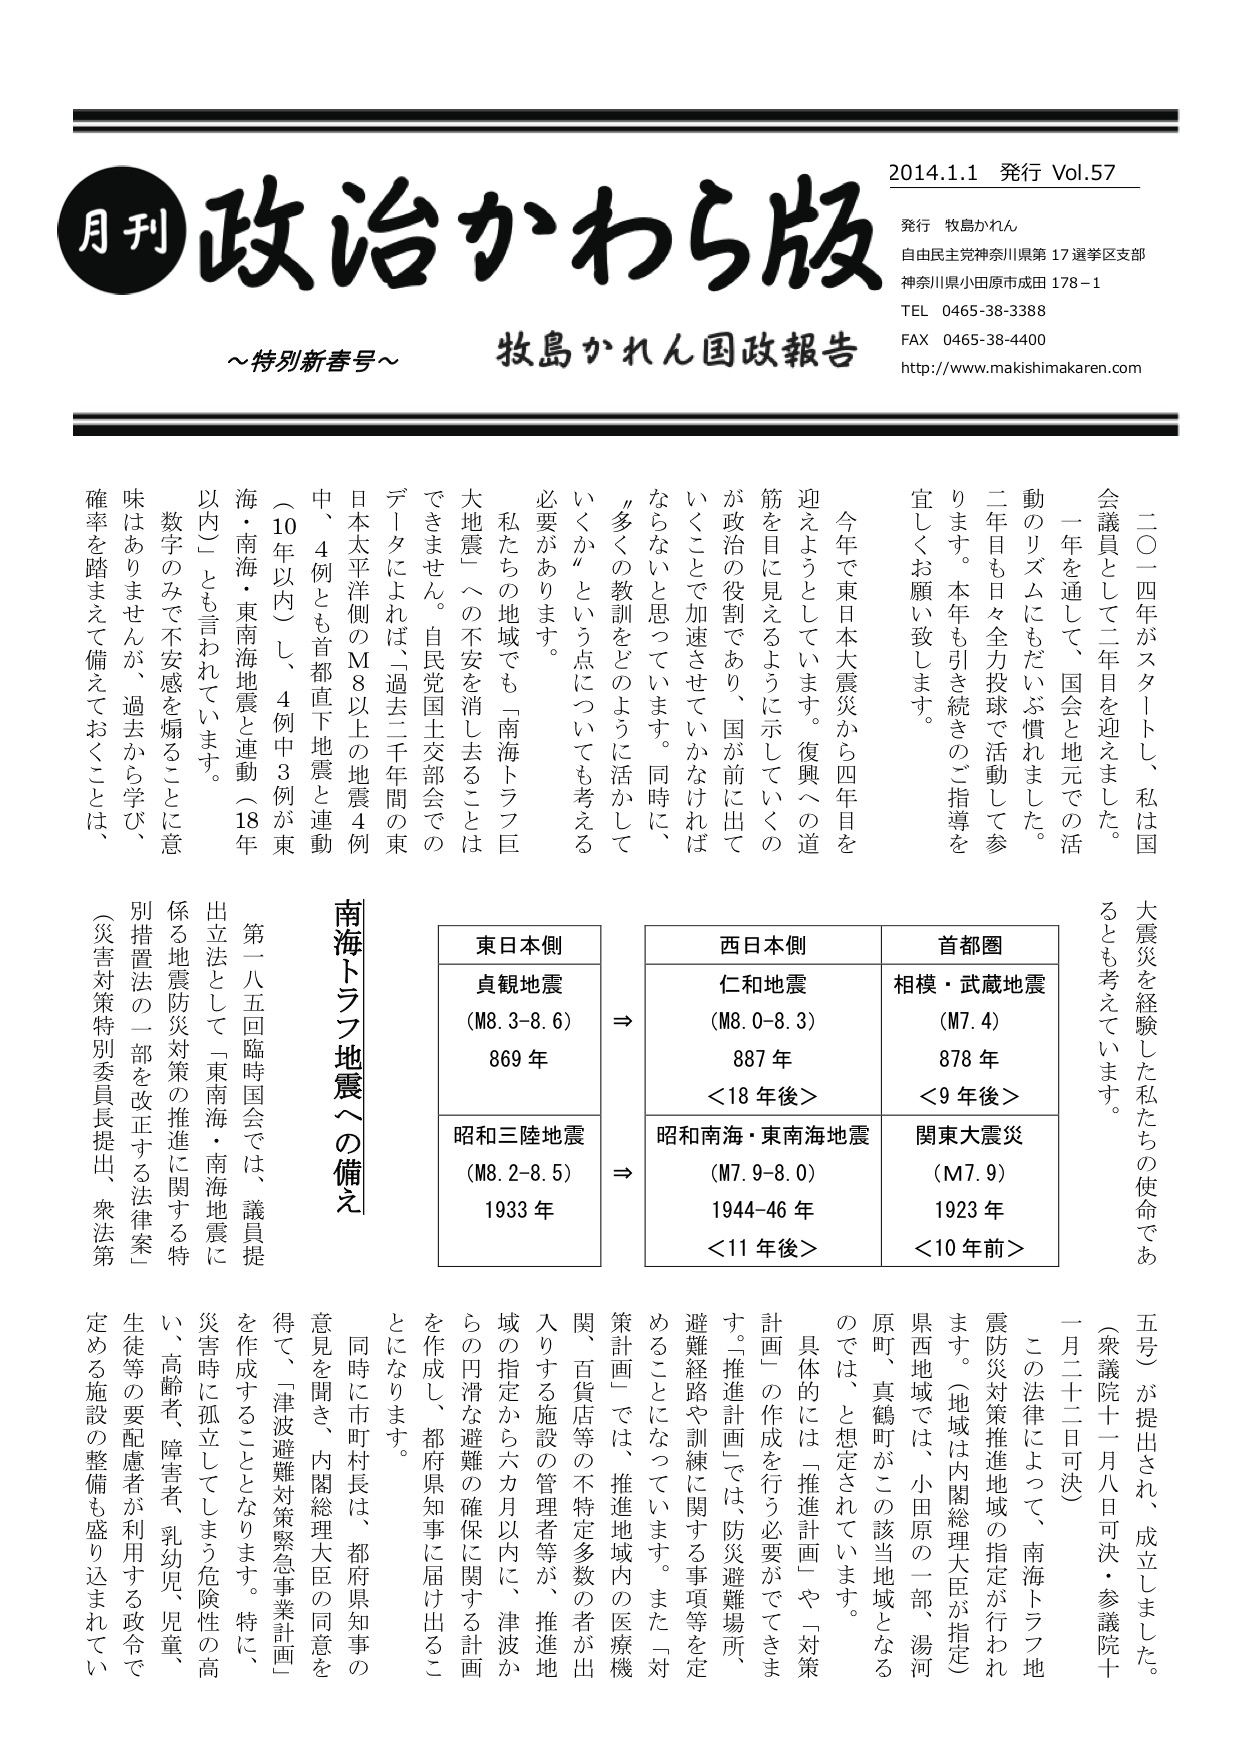 牧島かれん 政治かわら版 特別新春号 Vol.57